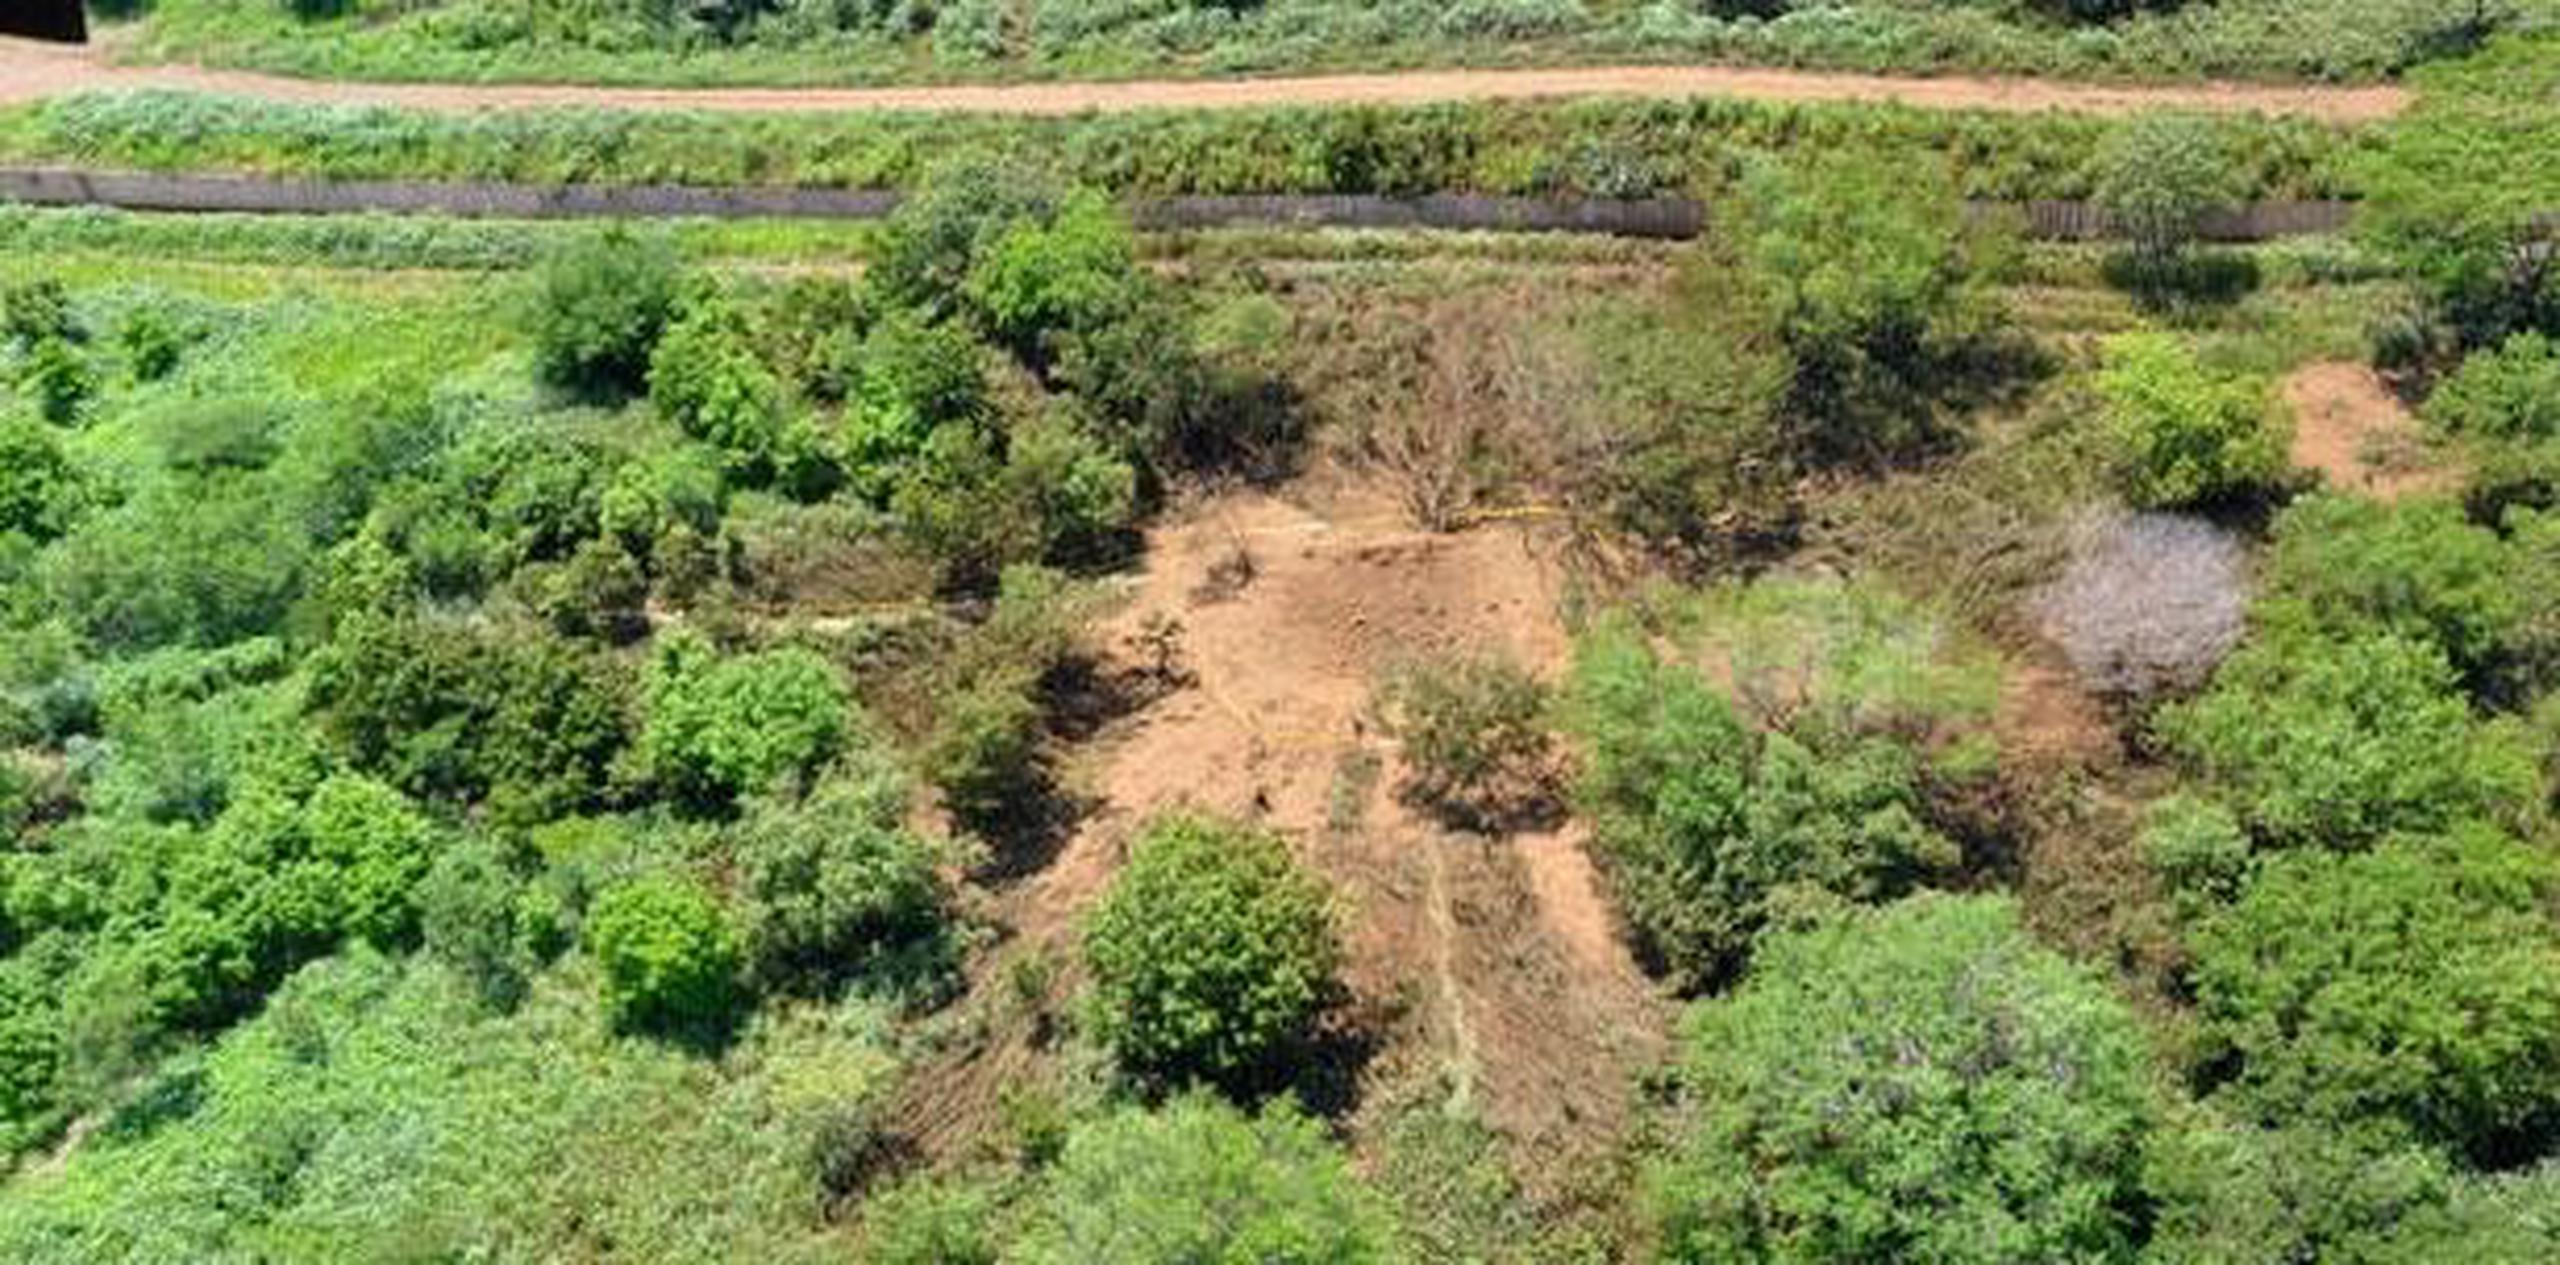 La Asociación Nicaragüense de Astrónomos Aficionados recomendó al Gobierno excavar en el cráter hasta encontrar el meteorito, para acabar con las especulaciones. (Archivo)